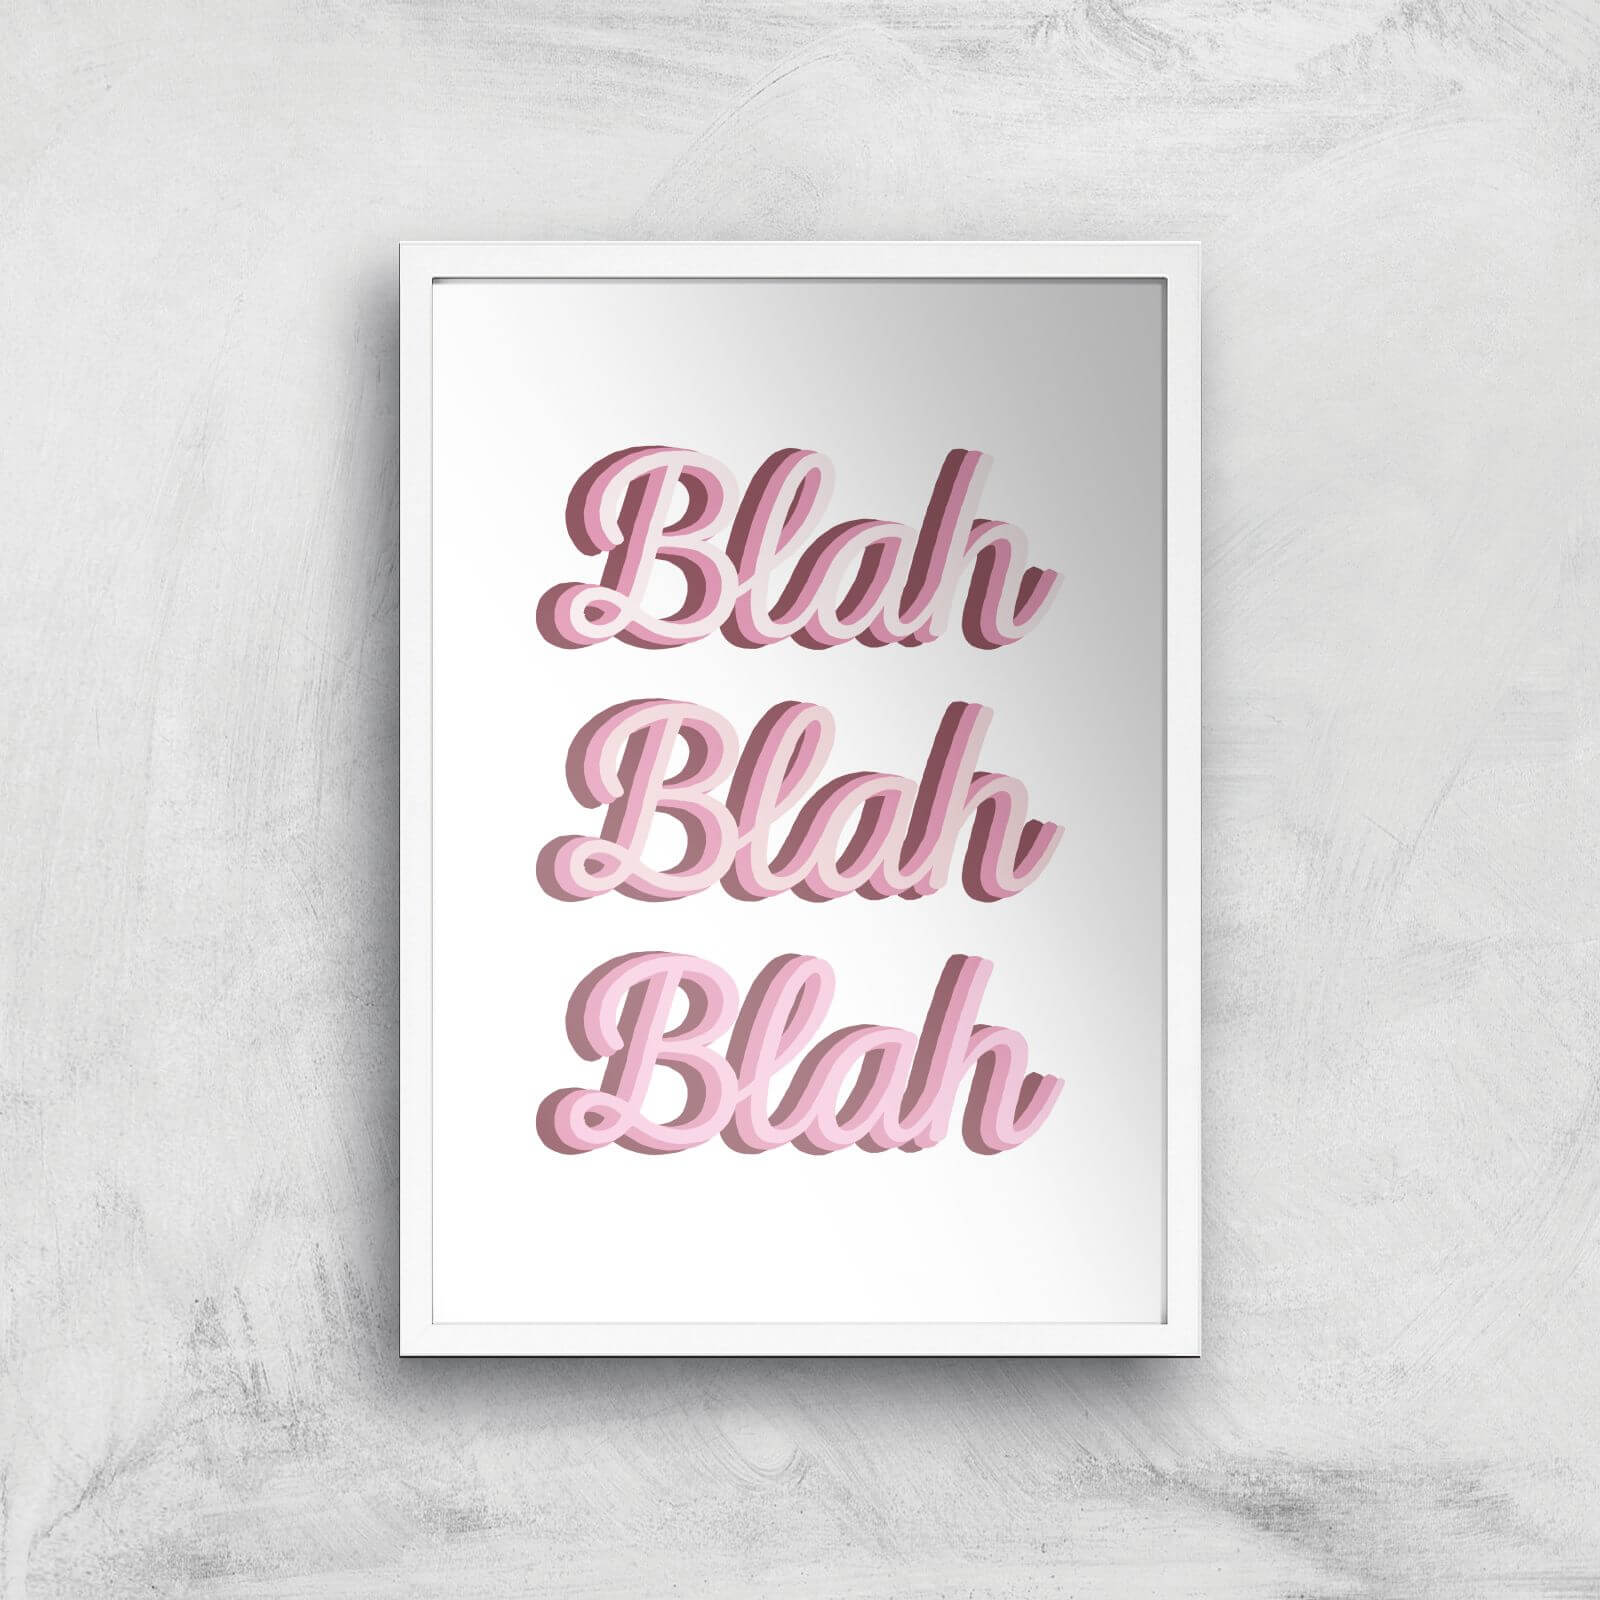 Blah Blah Blah Giclée Art Print - A2 - White Frame